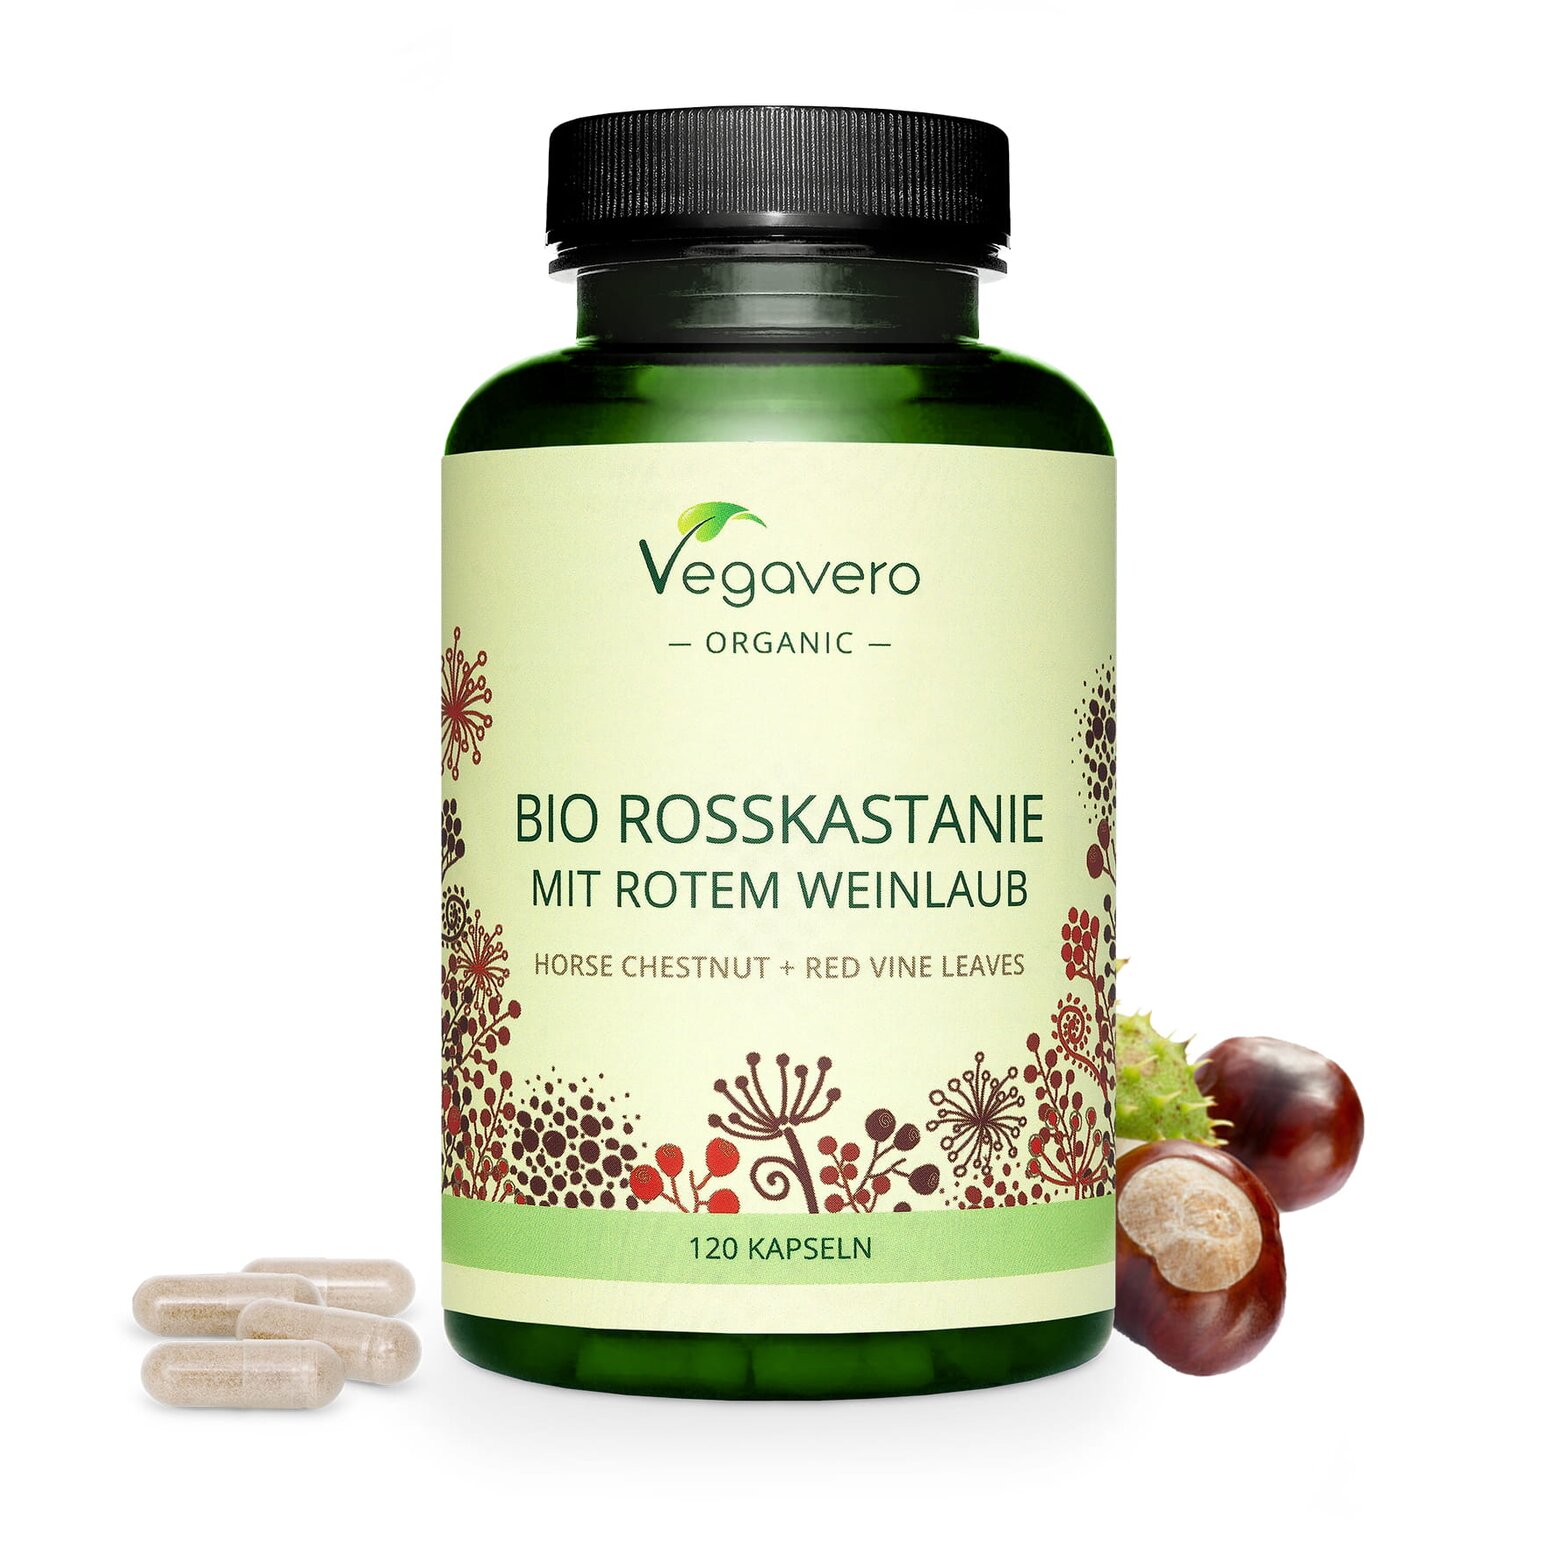 Vegavero Bio Rosskastanie mit rotem Weinlaub | 120 Kapseln | Unterstützt die Venengesundheit | Natürlich & Vegan